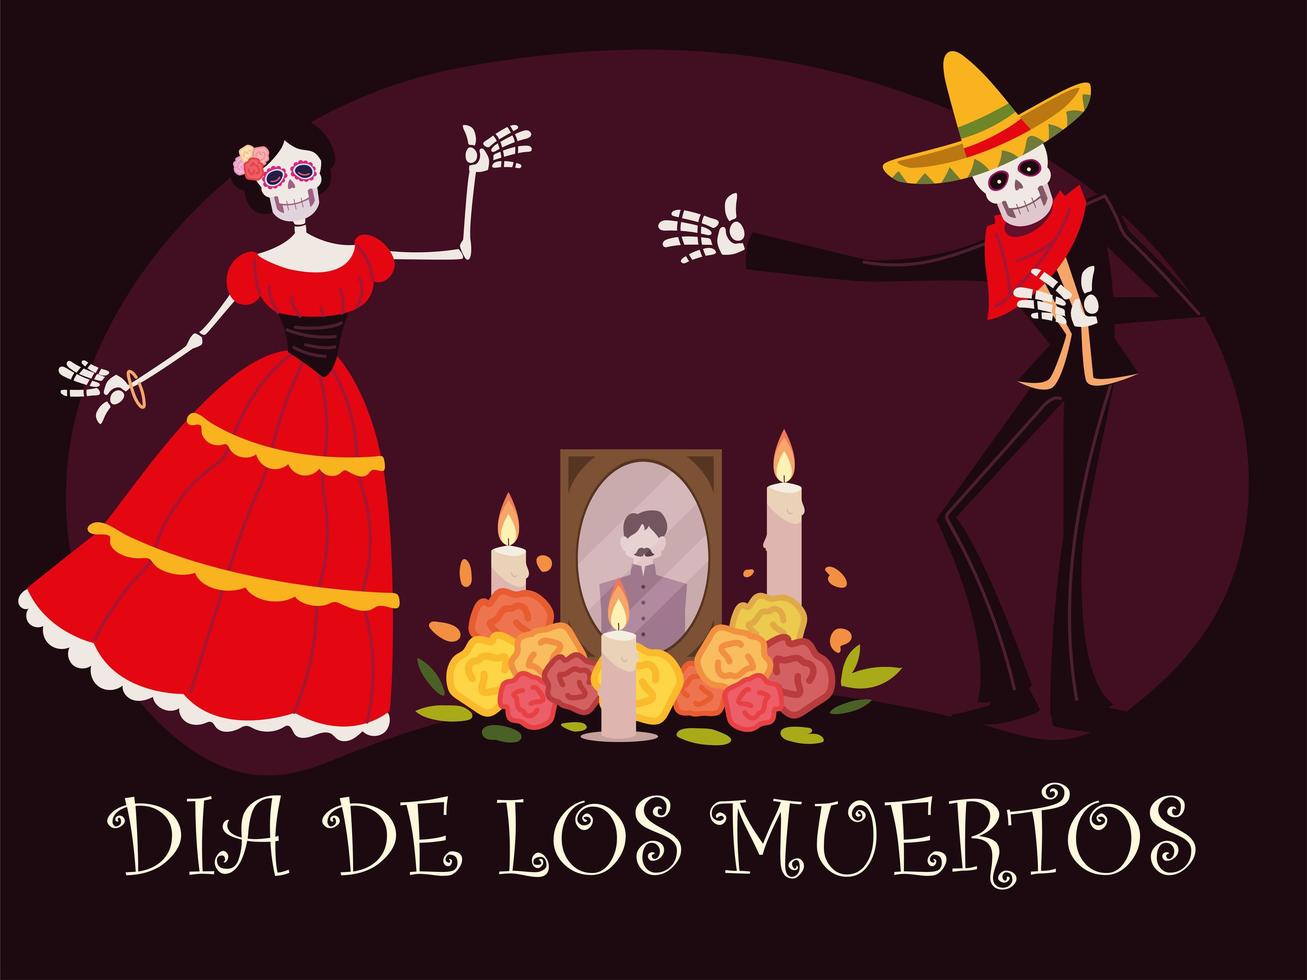 jour des morts, autel avec bougies et fleurs photo squelette catrina, célébration mexicaine vecteur